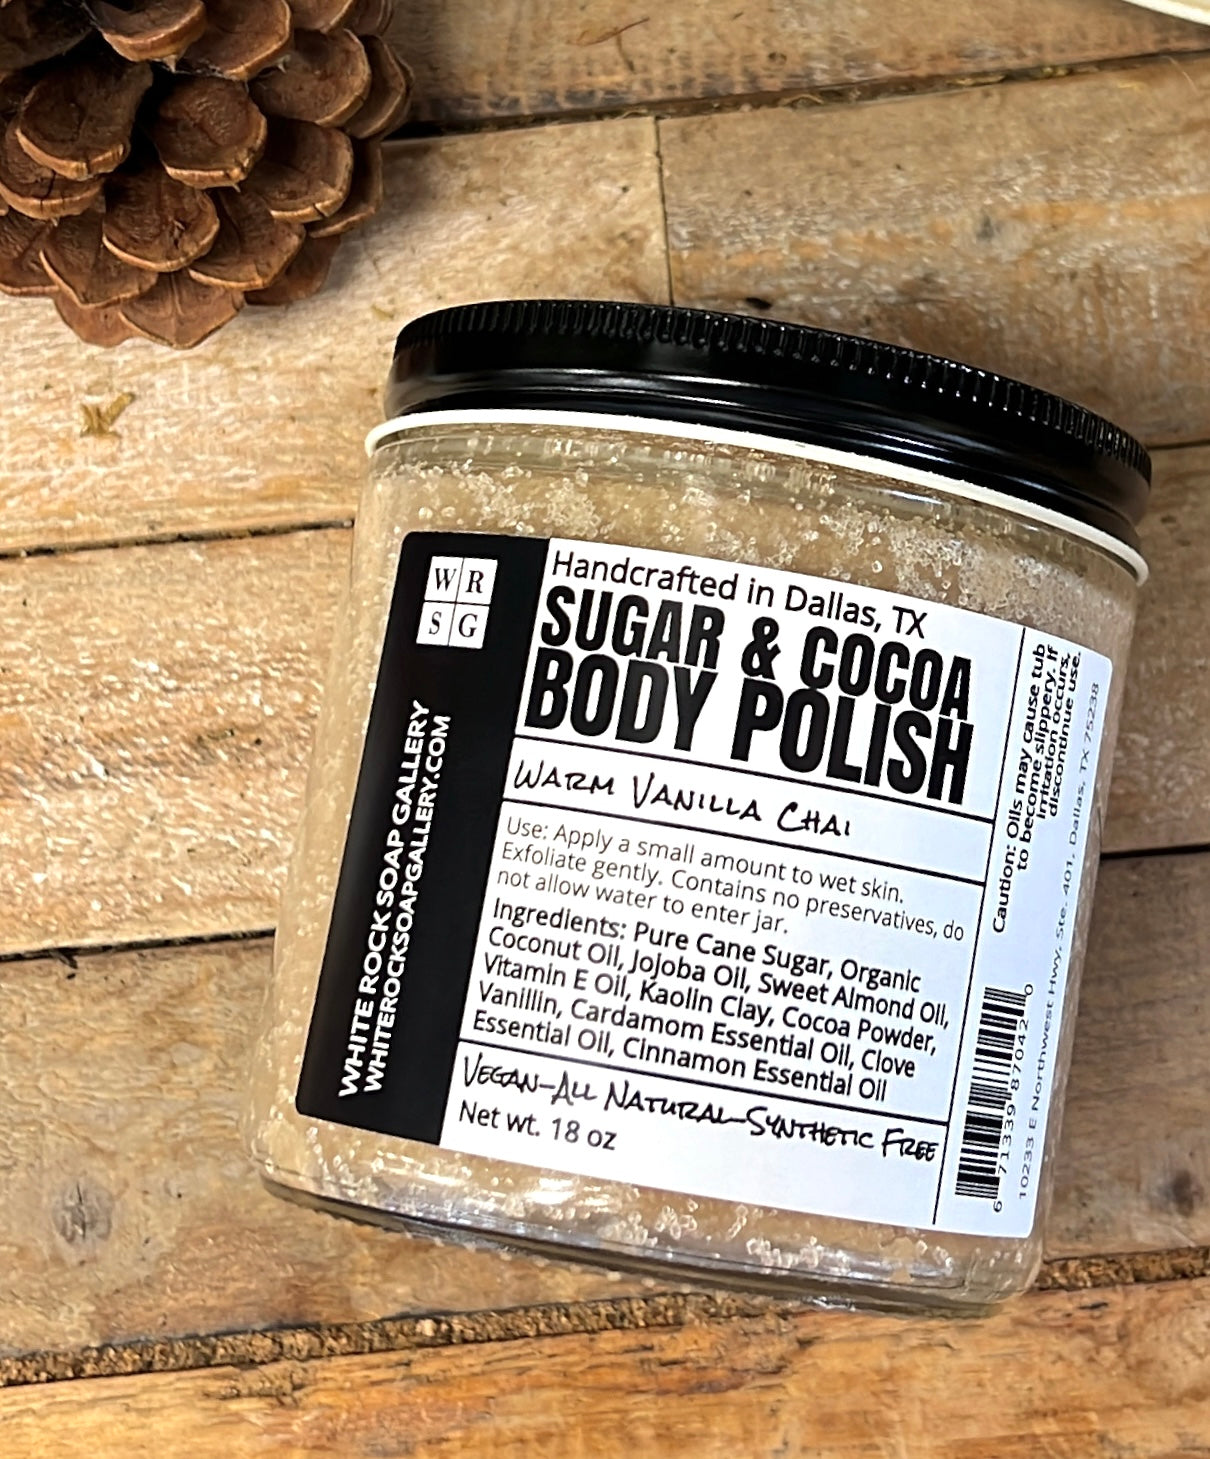 Sugar & Cocoa Body Polish